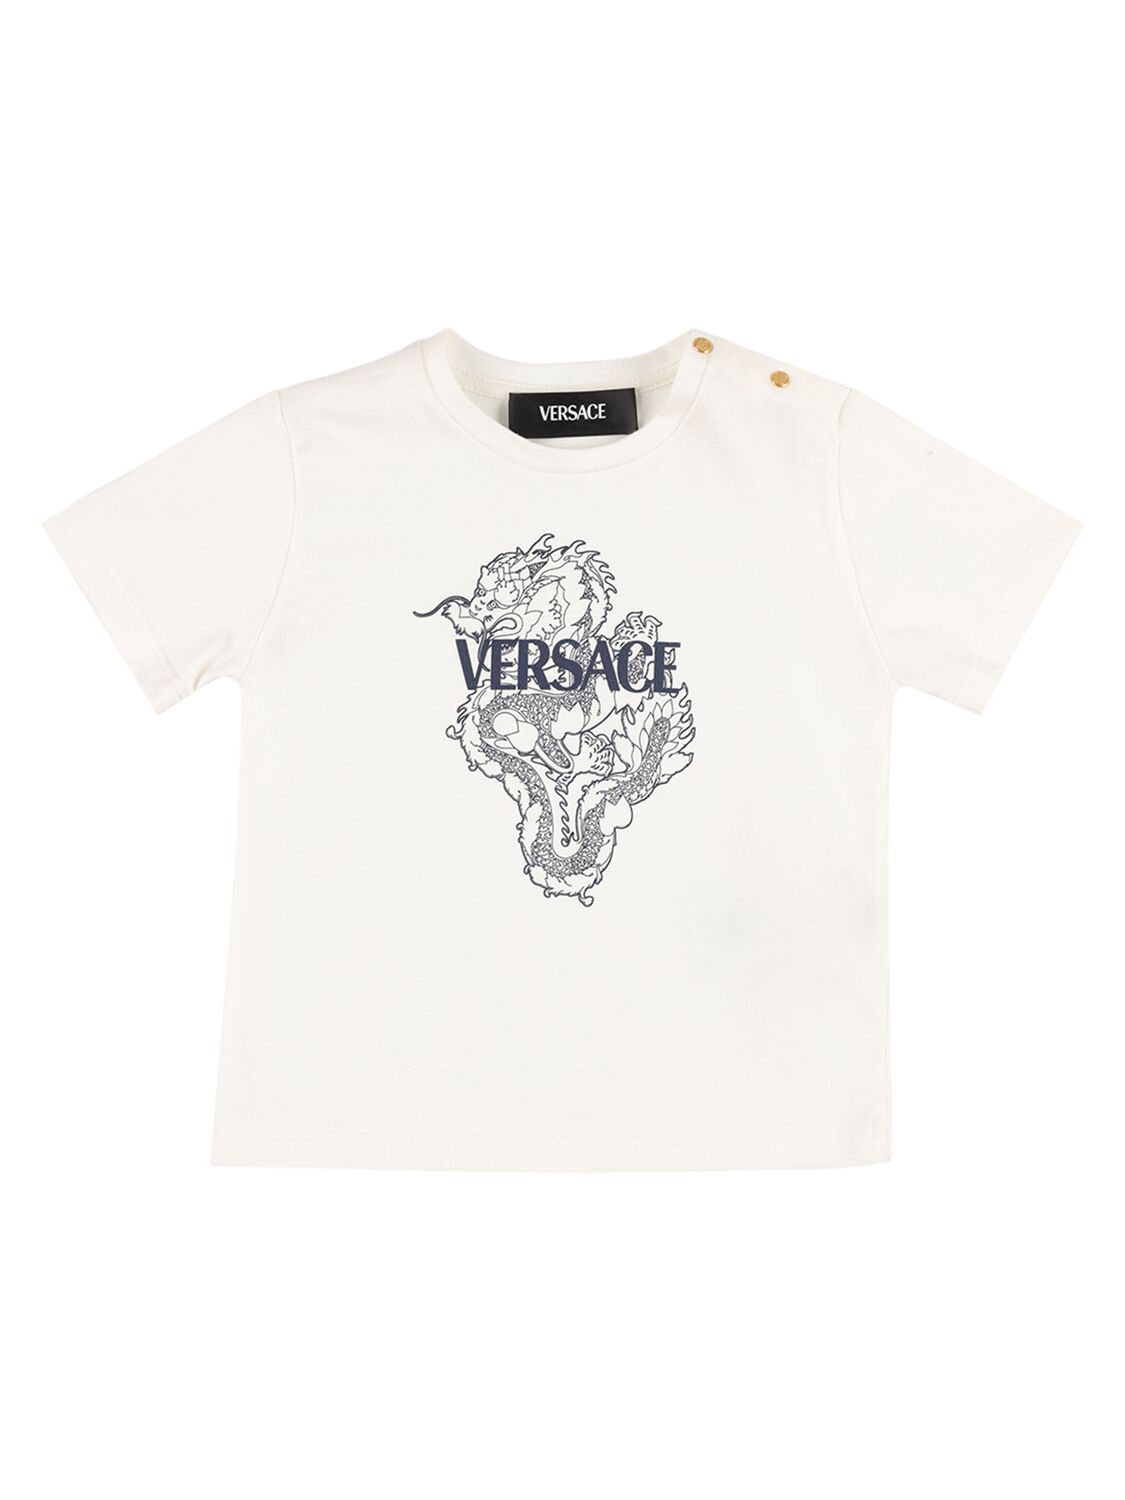 Versace Kids' Dragan Printed Cotton Jersey T-shirt In 화이트,블루